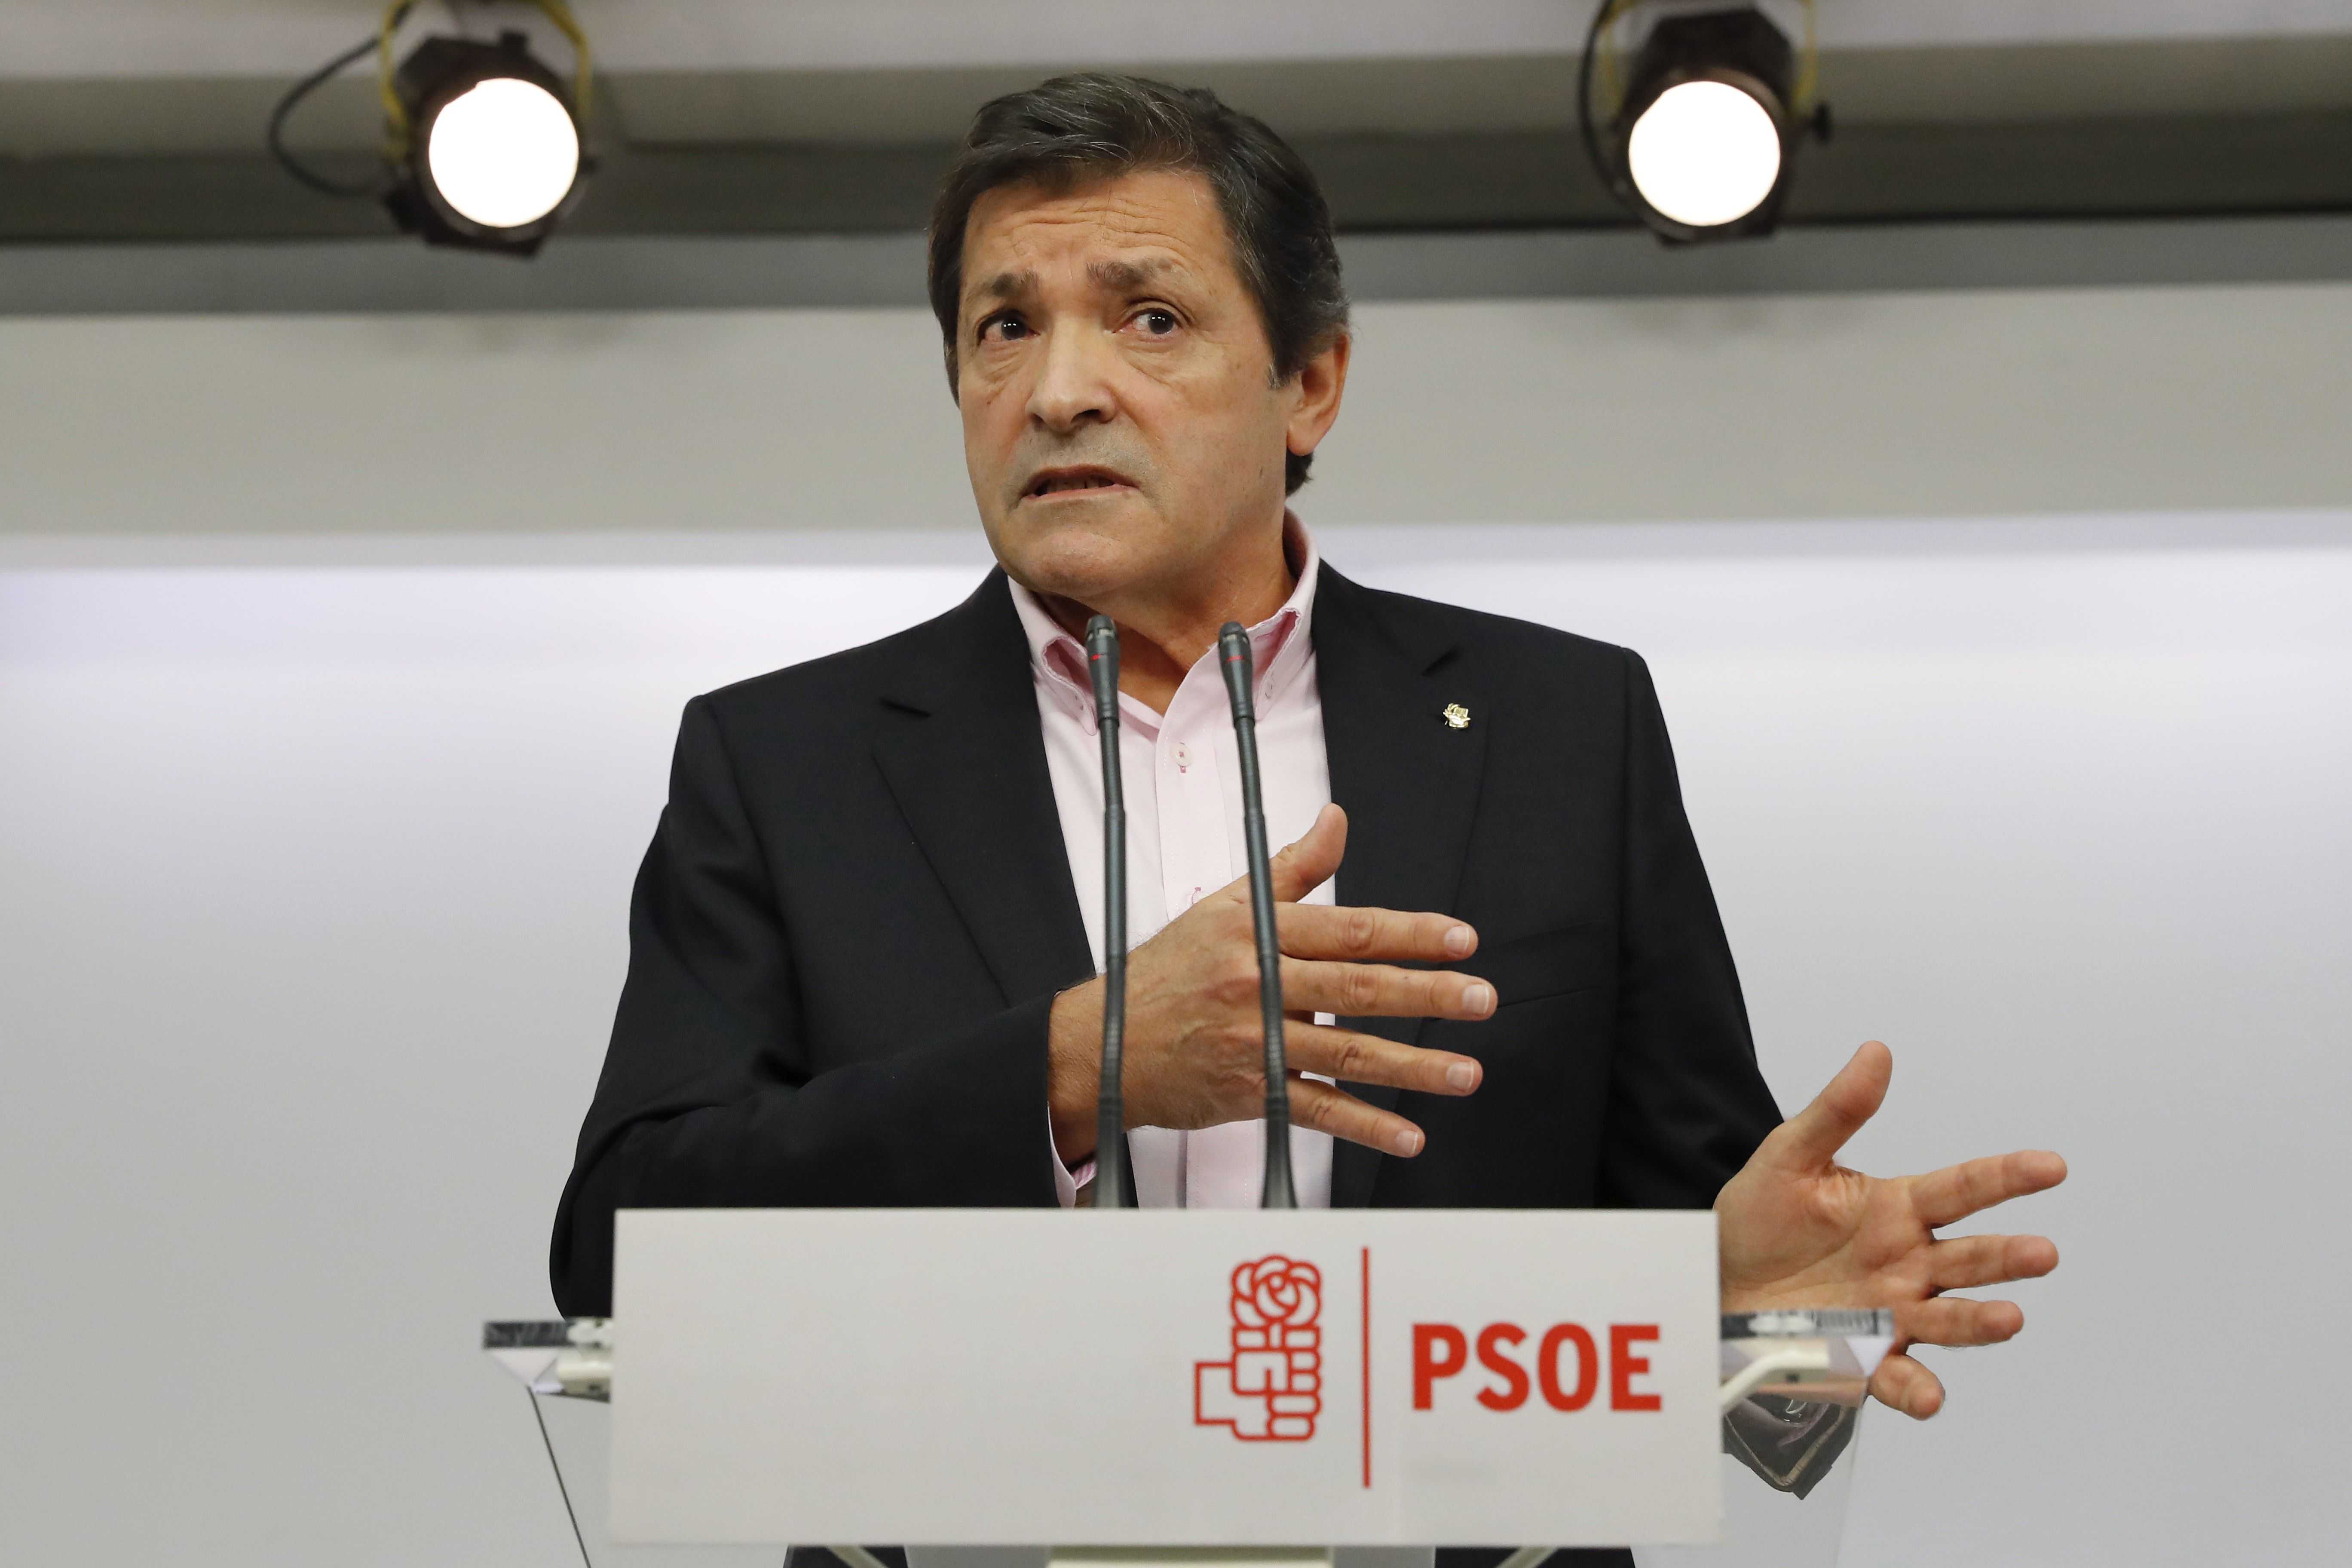 El PSOE adverteix Trump que Mèxic és "país amic d'Espanya"